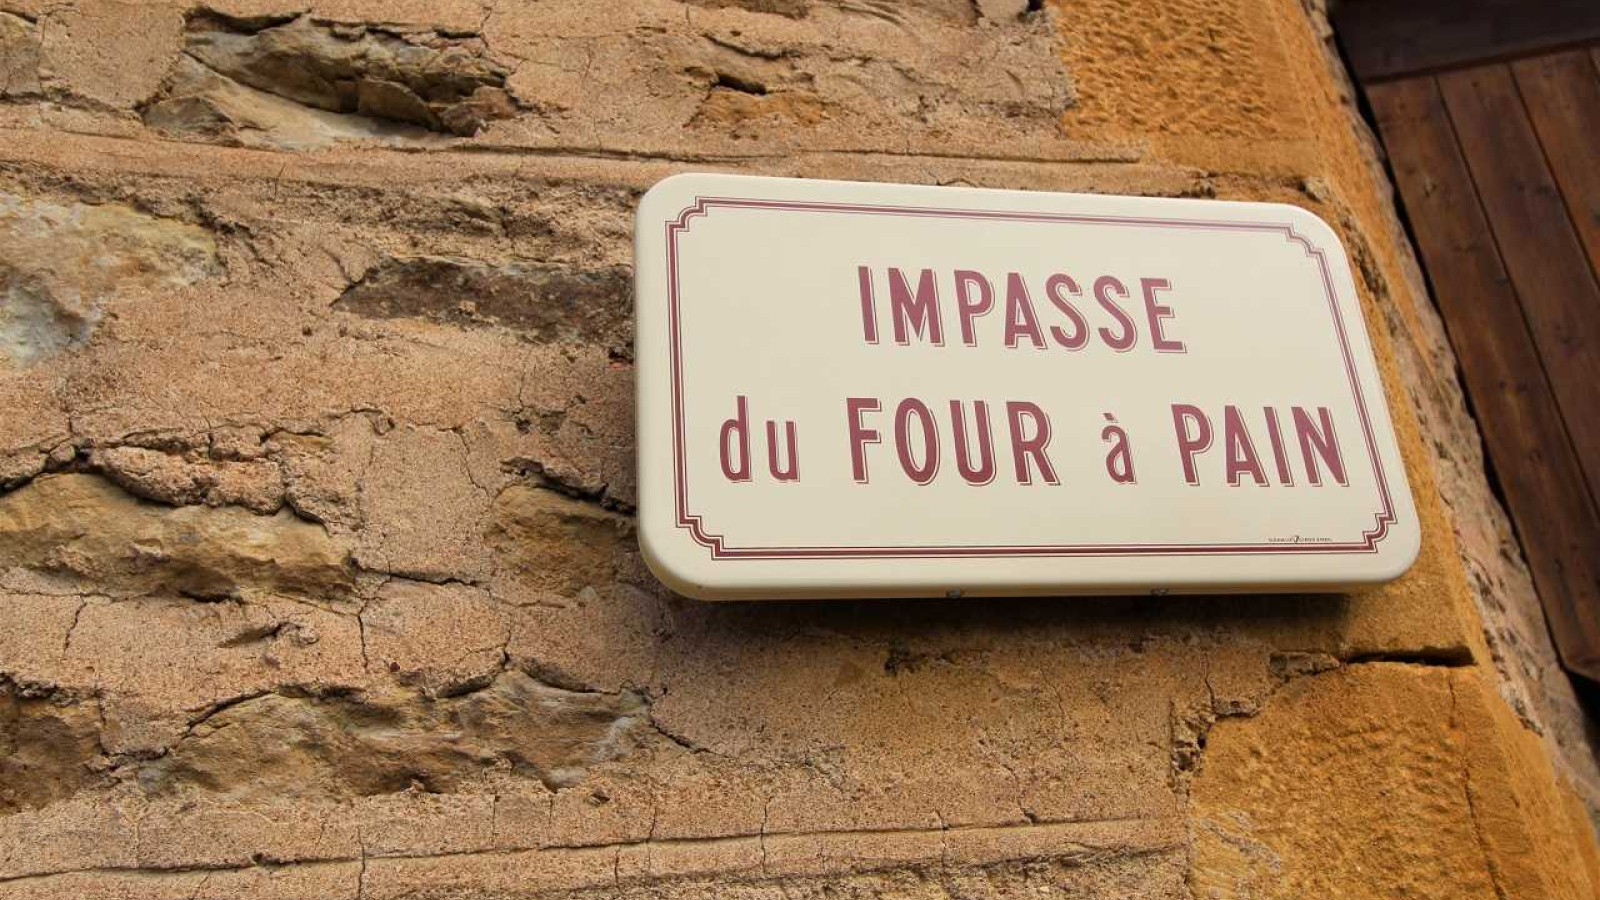 Chambres d'hôtes 'Bienvenue à Dalbepierre' à St Laurent d'Oingt/Val d'Oingt dans le Beaujolais - Rhône : Impasse du Four à Pain.